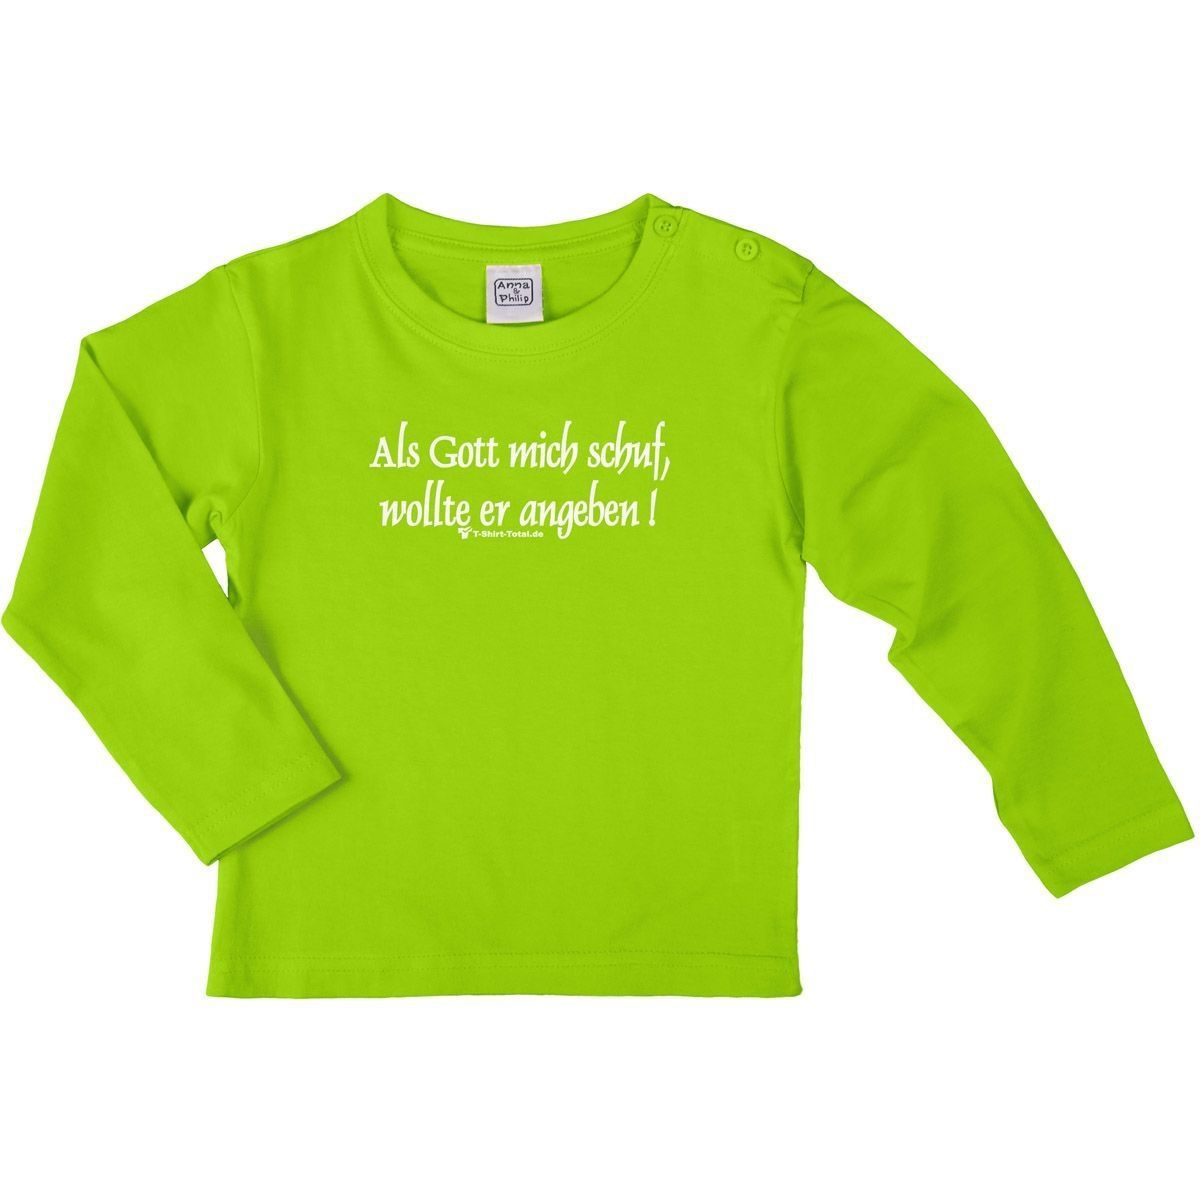 Als Gott mich schuf Kinder Langarm Shirt hellgrün 56 / 62